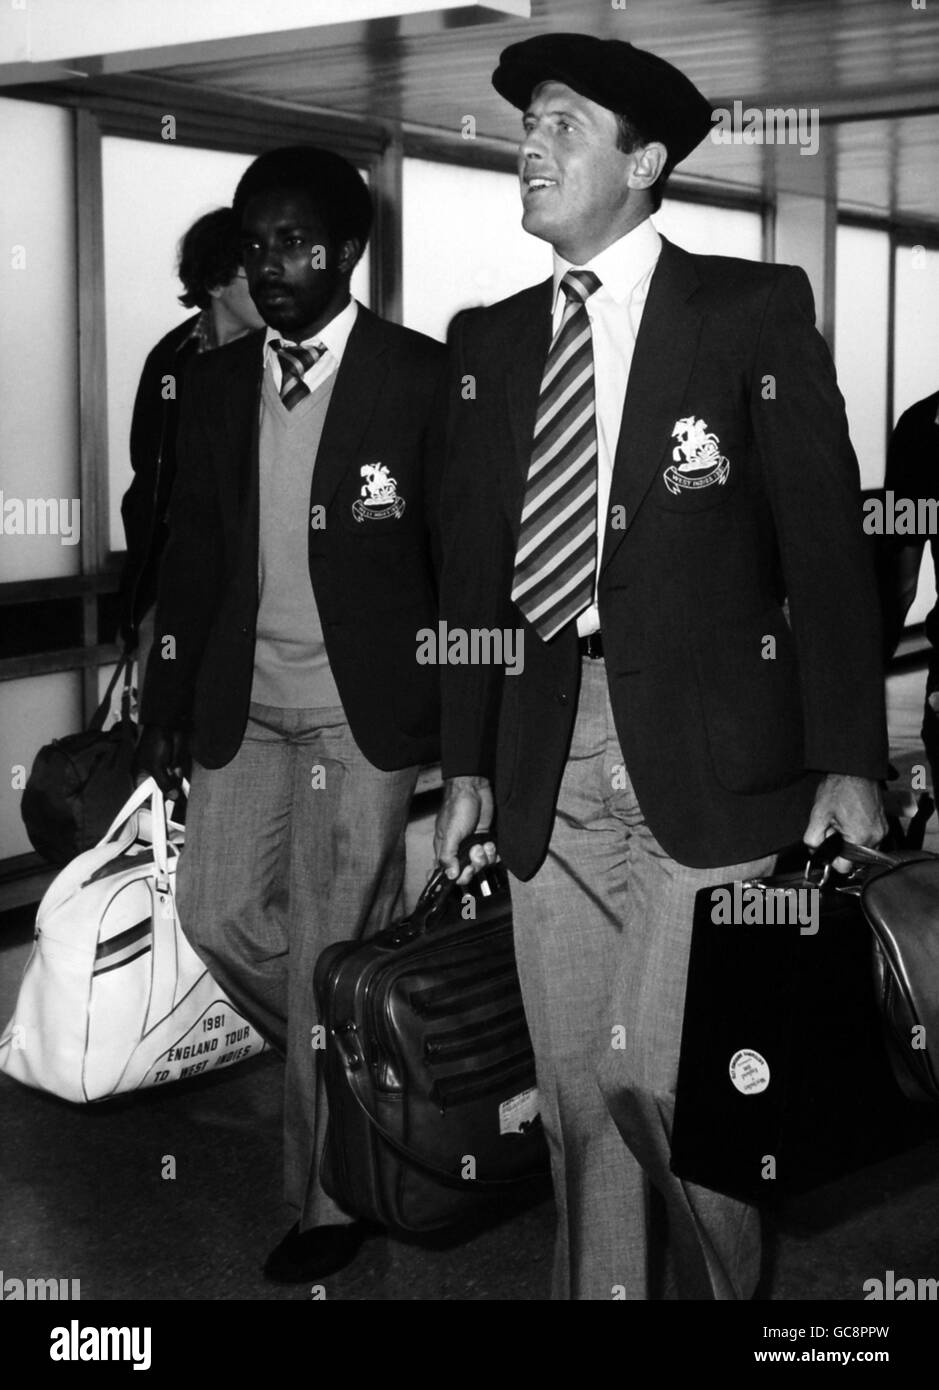 Le joueur de cricket anglais Geoff boycott, portant un grand modèle de style indien occidental, arrive avec son collègue de cricket anglais Roland Butcher à l'aéroport de Londres Heathrow après le West Indies Tour Banque D'Images